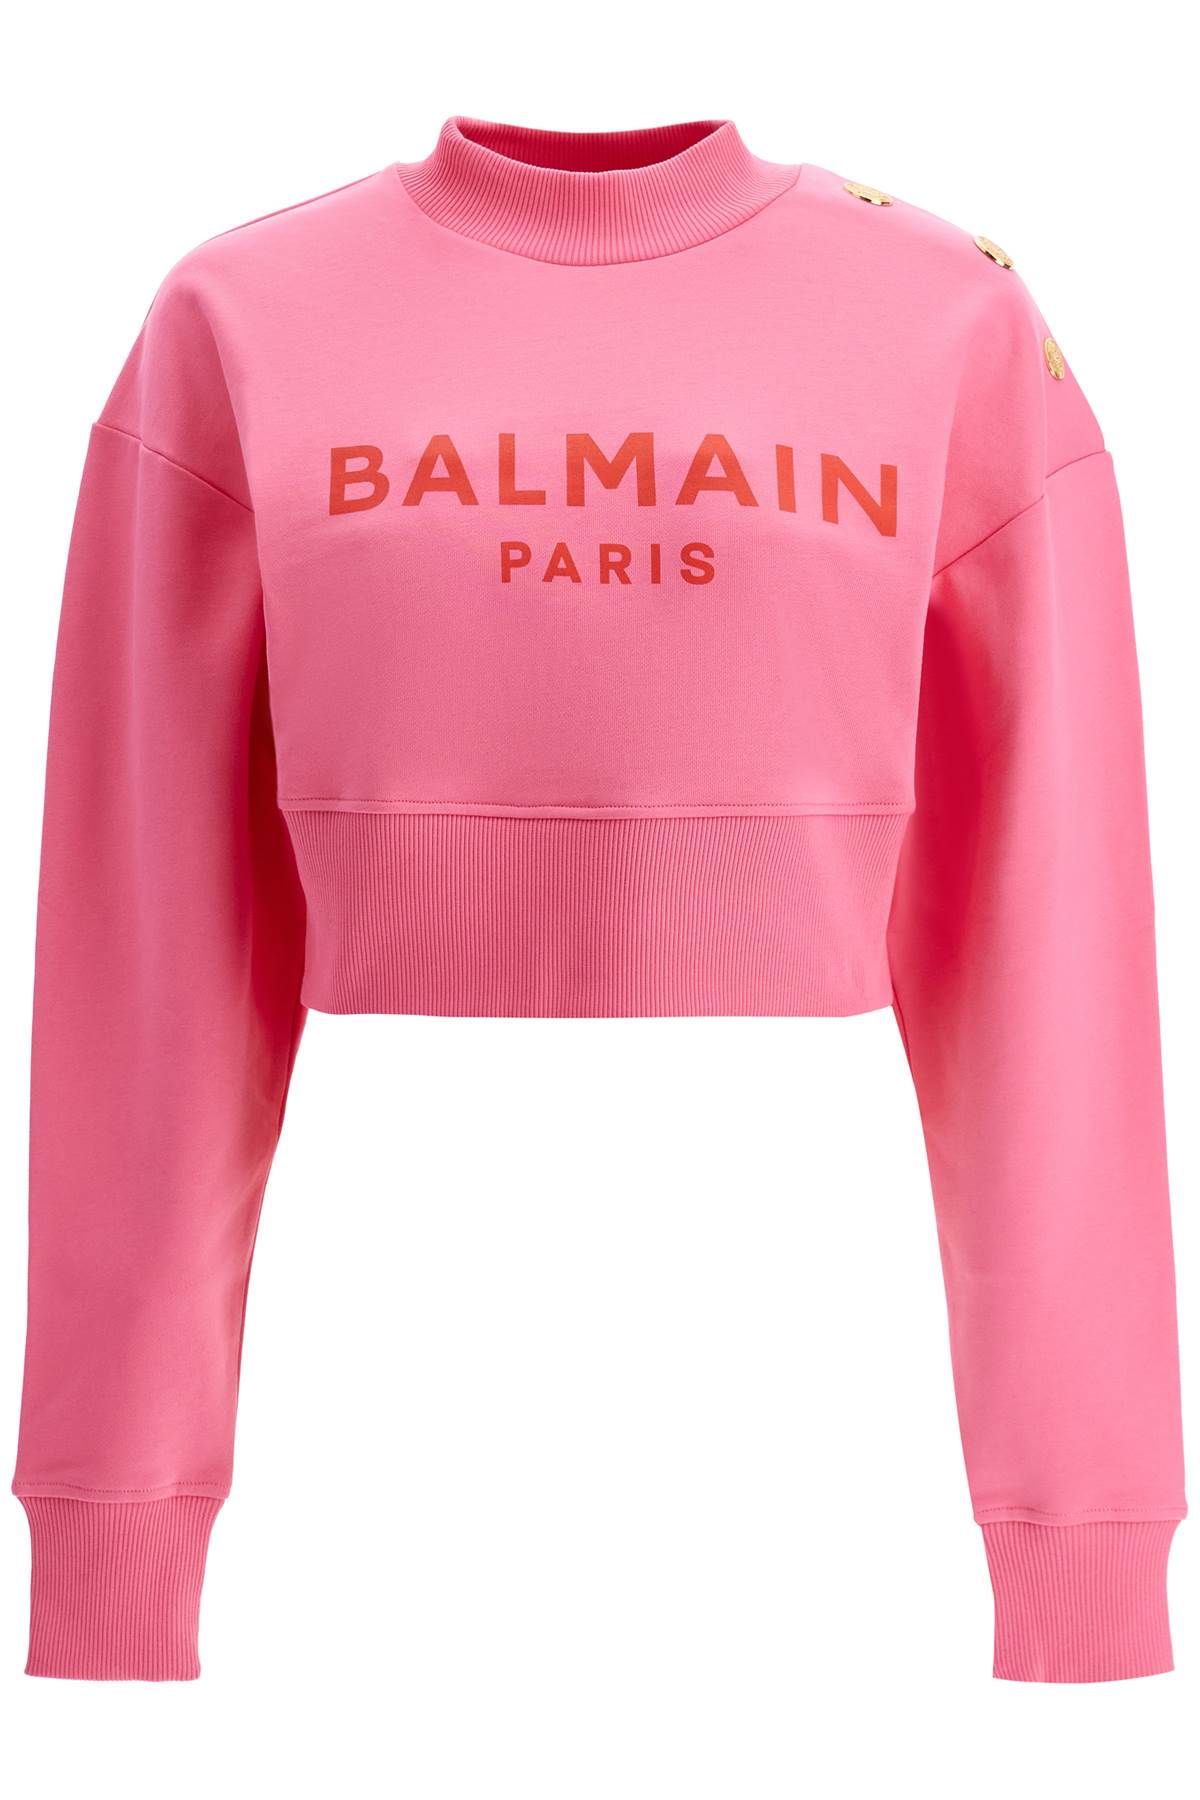 Balmain BALMAIN cropped sweatshirt with buttons